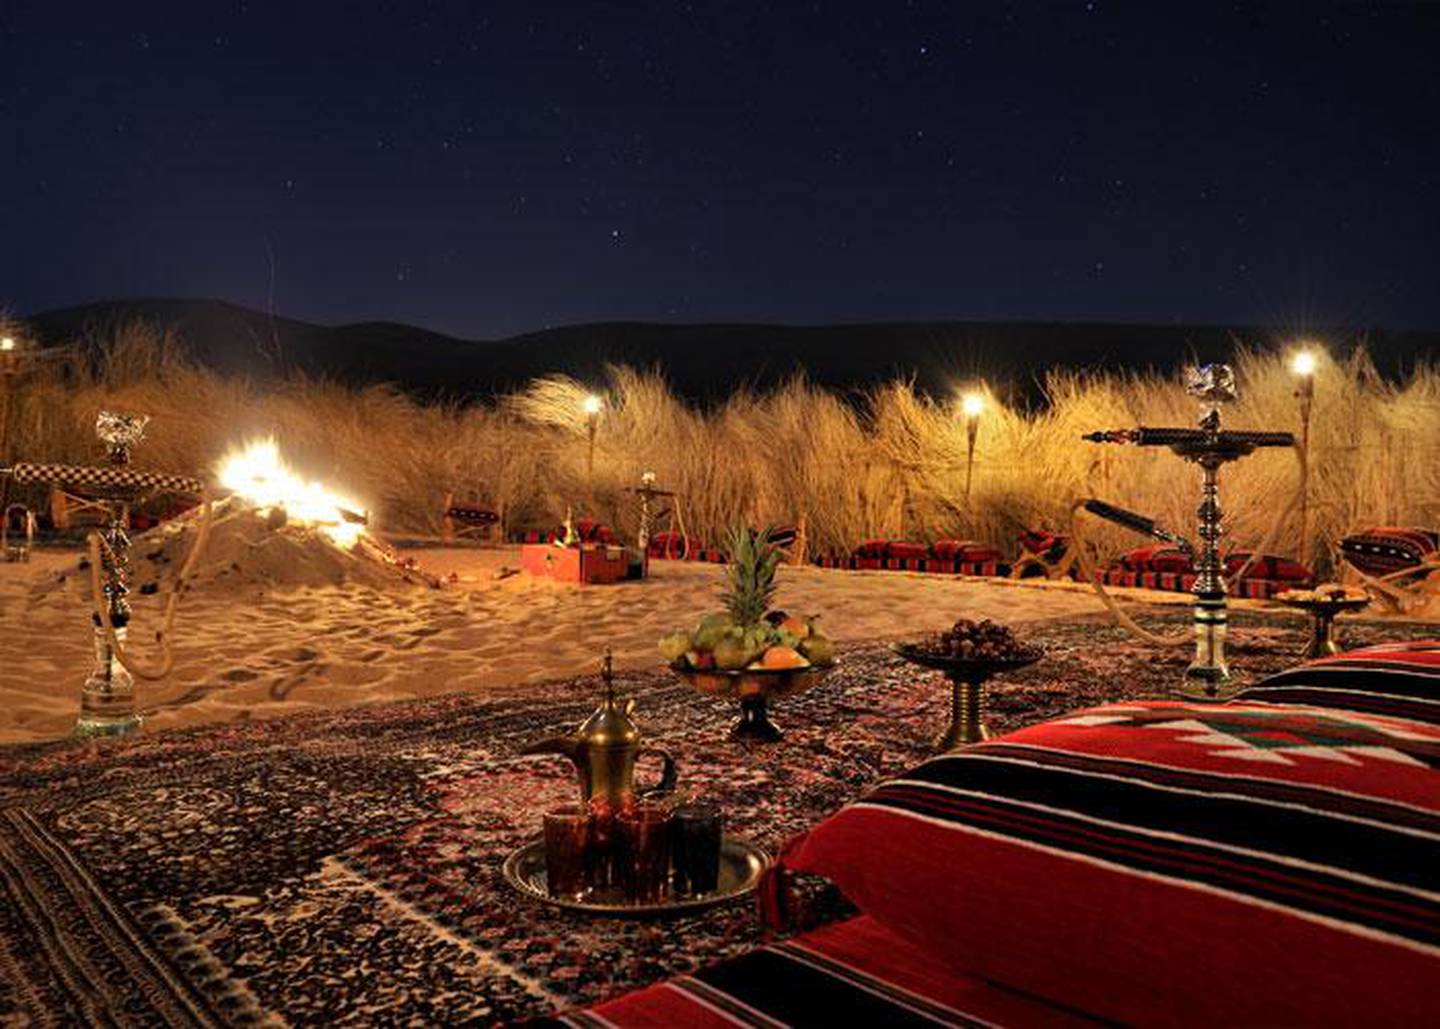 Enjoy a Bedouin experience with Anantara Hotels. Courtesy Anantara Hotels